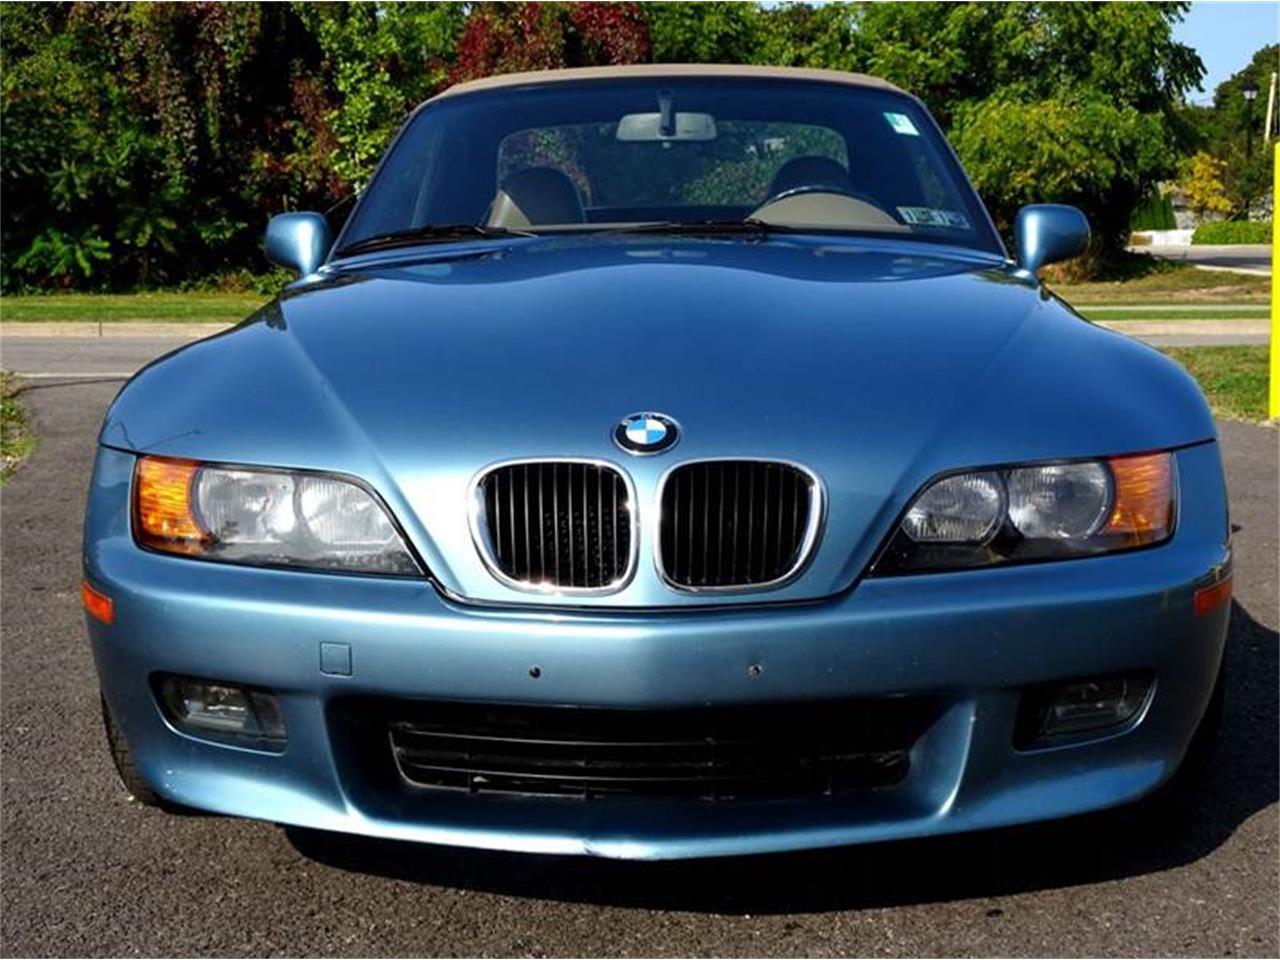 1997 BMW Z3 for Sale | ClassicCars.com | CC-1022775